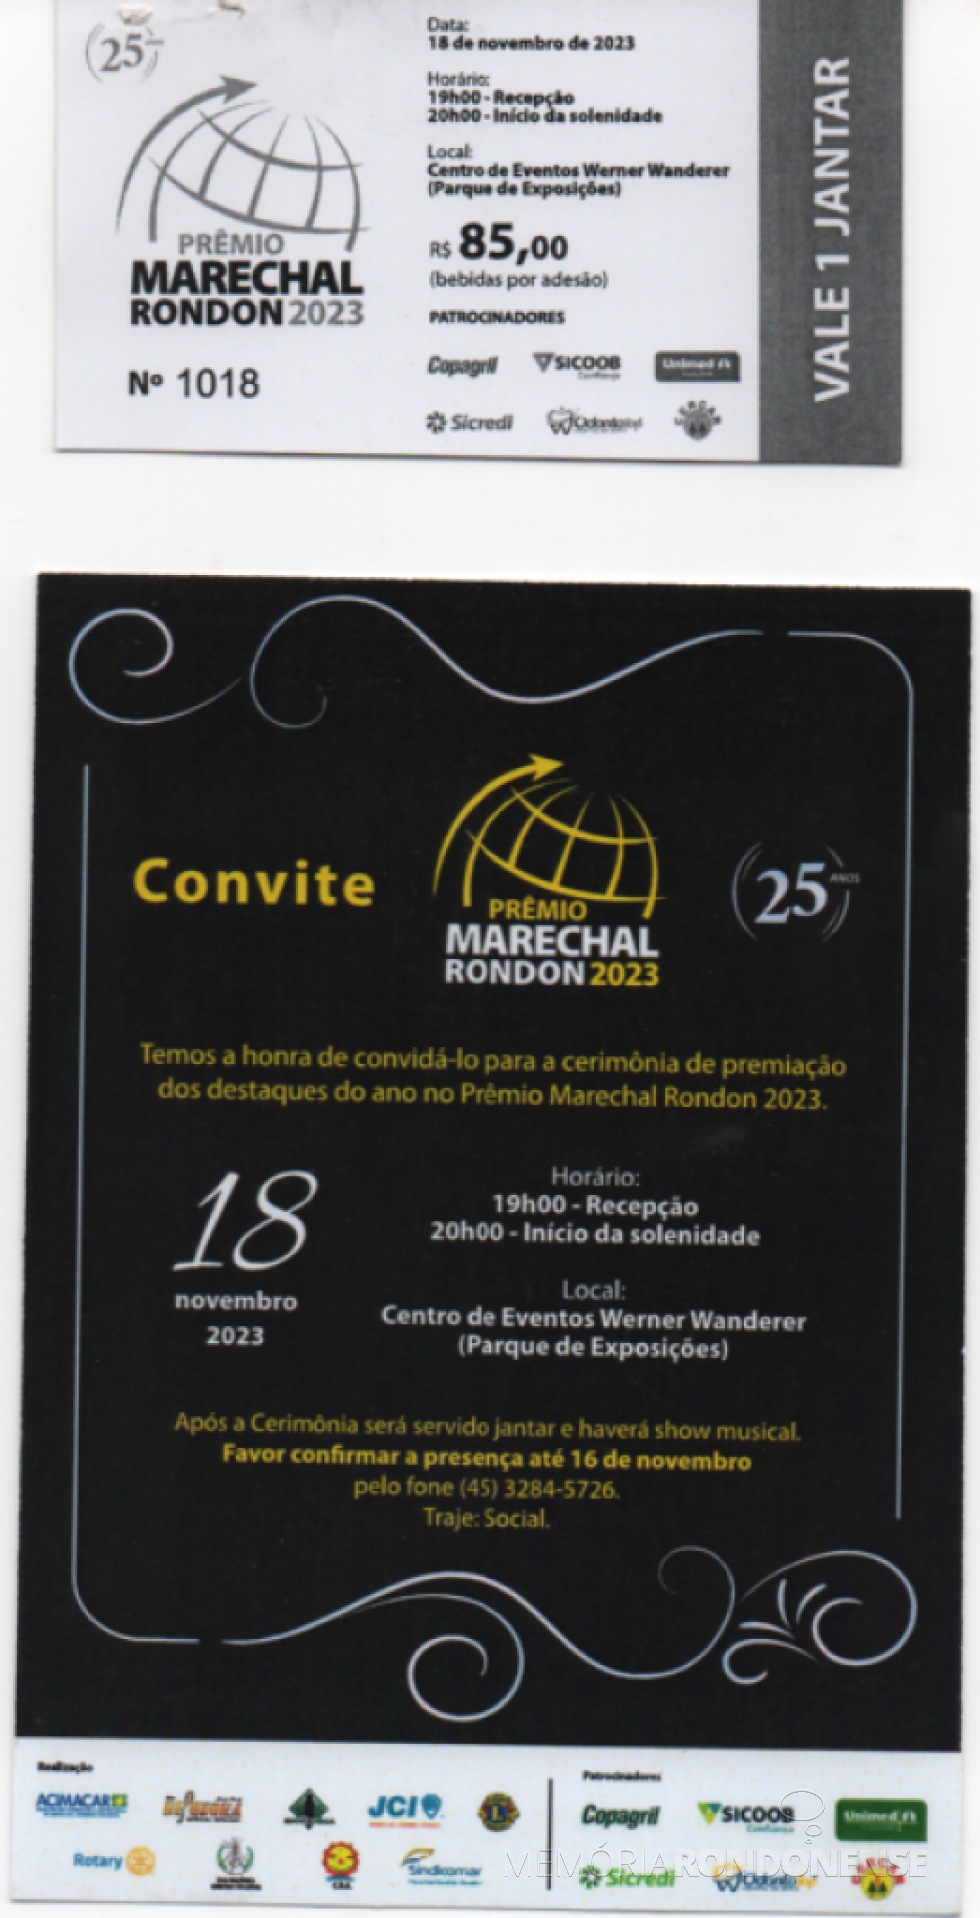 || Ticket para o jantar e o convite para o Prêmio Marechal Rondon 2023, em novembro de 2023.
Imagem: Acervo Projeto Memória Rondonense - FOTO 22 - 